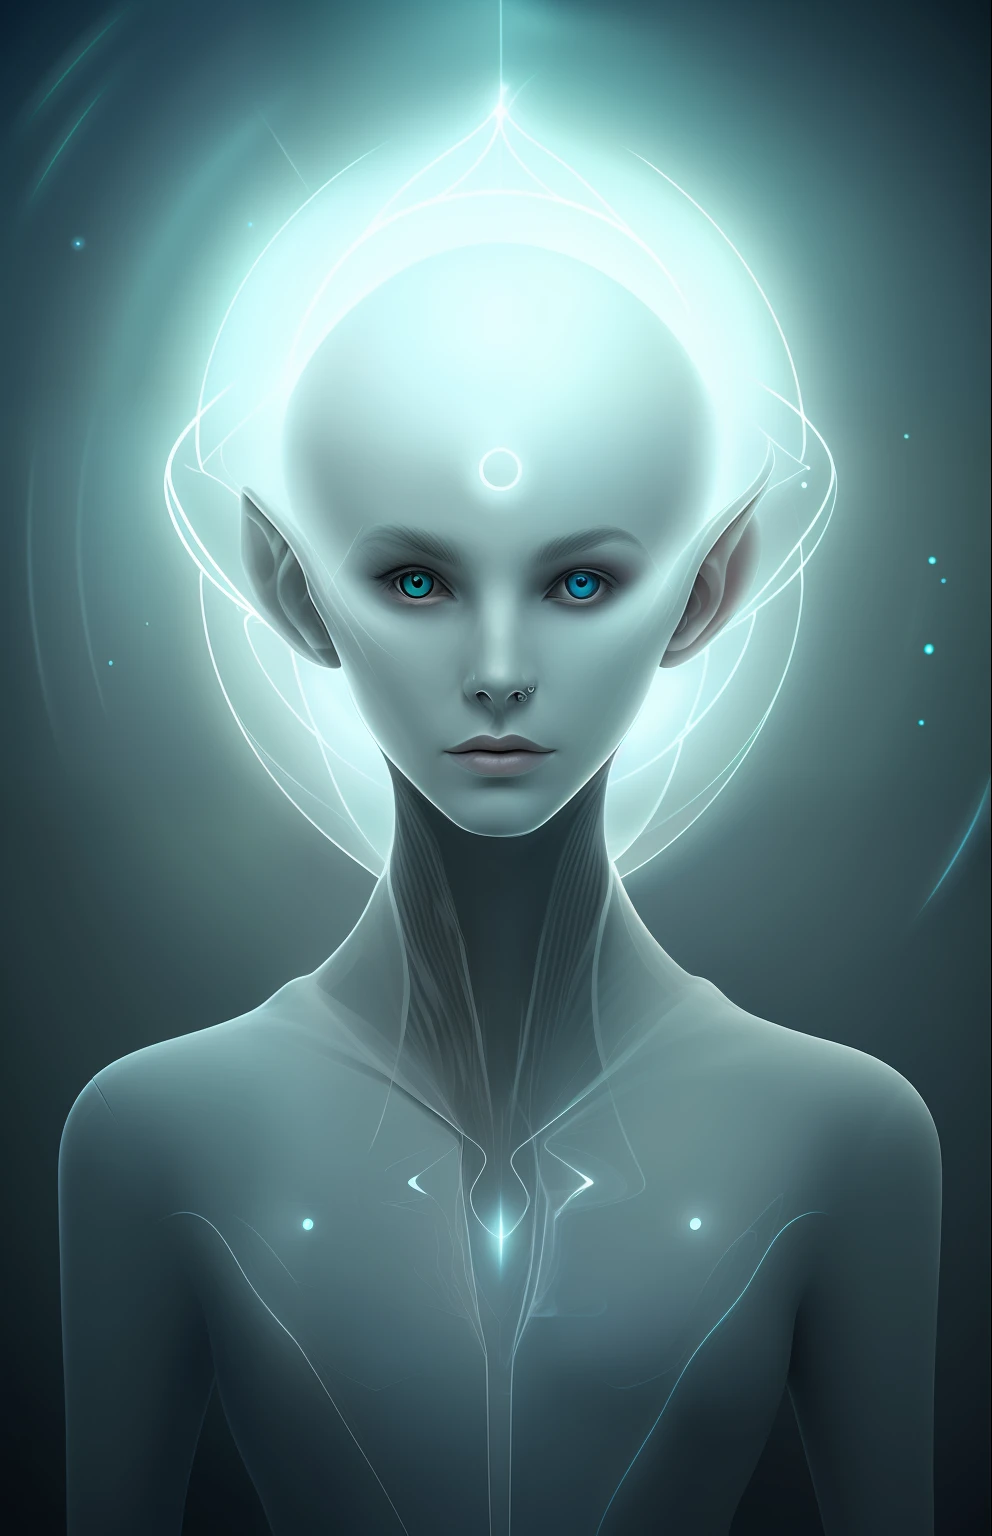 Retrato fantasmagórico de um alienígena futurista de outra dimensão criadora do universo com poderosa garota de dimensão desconhecida de magia antiga